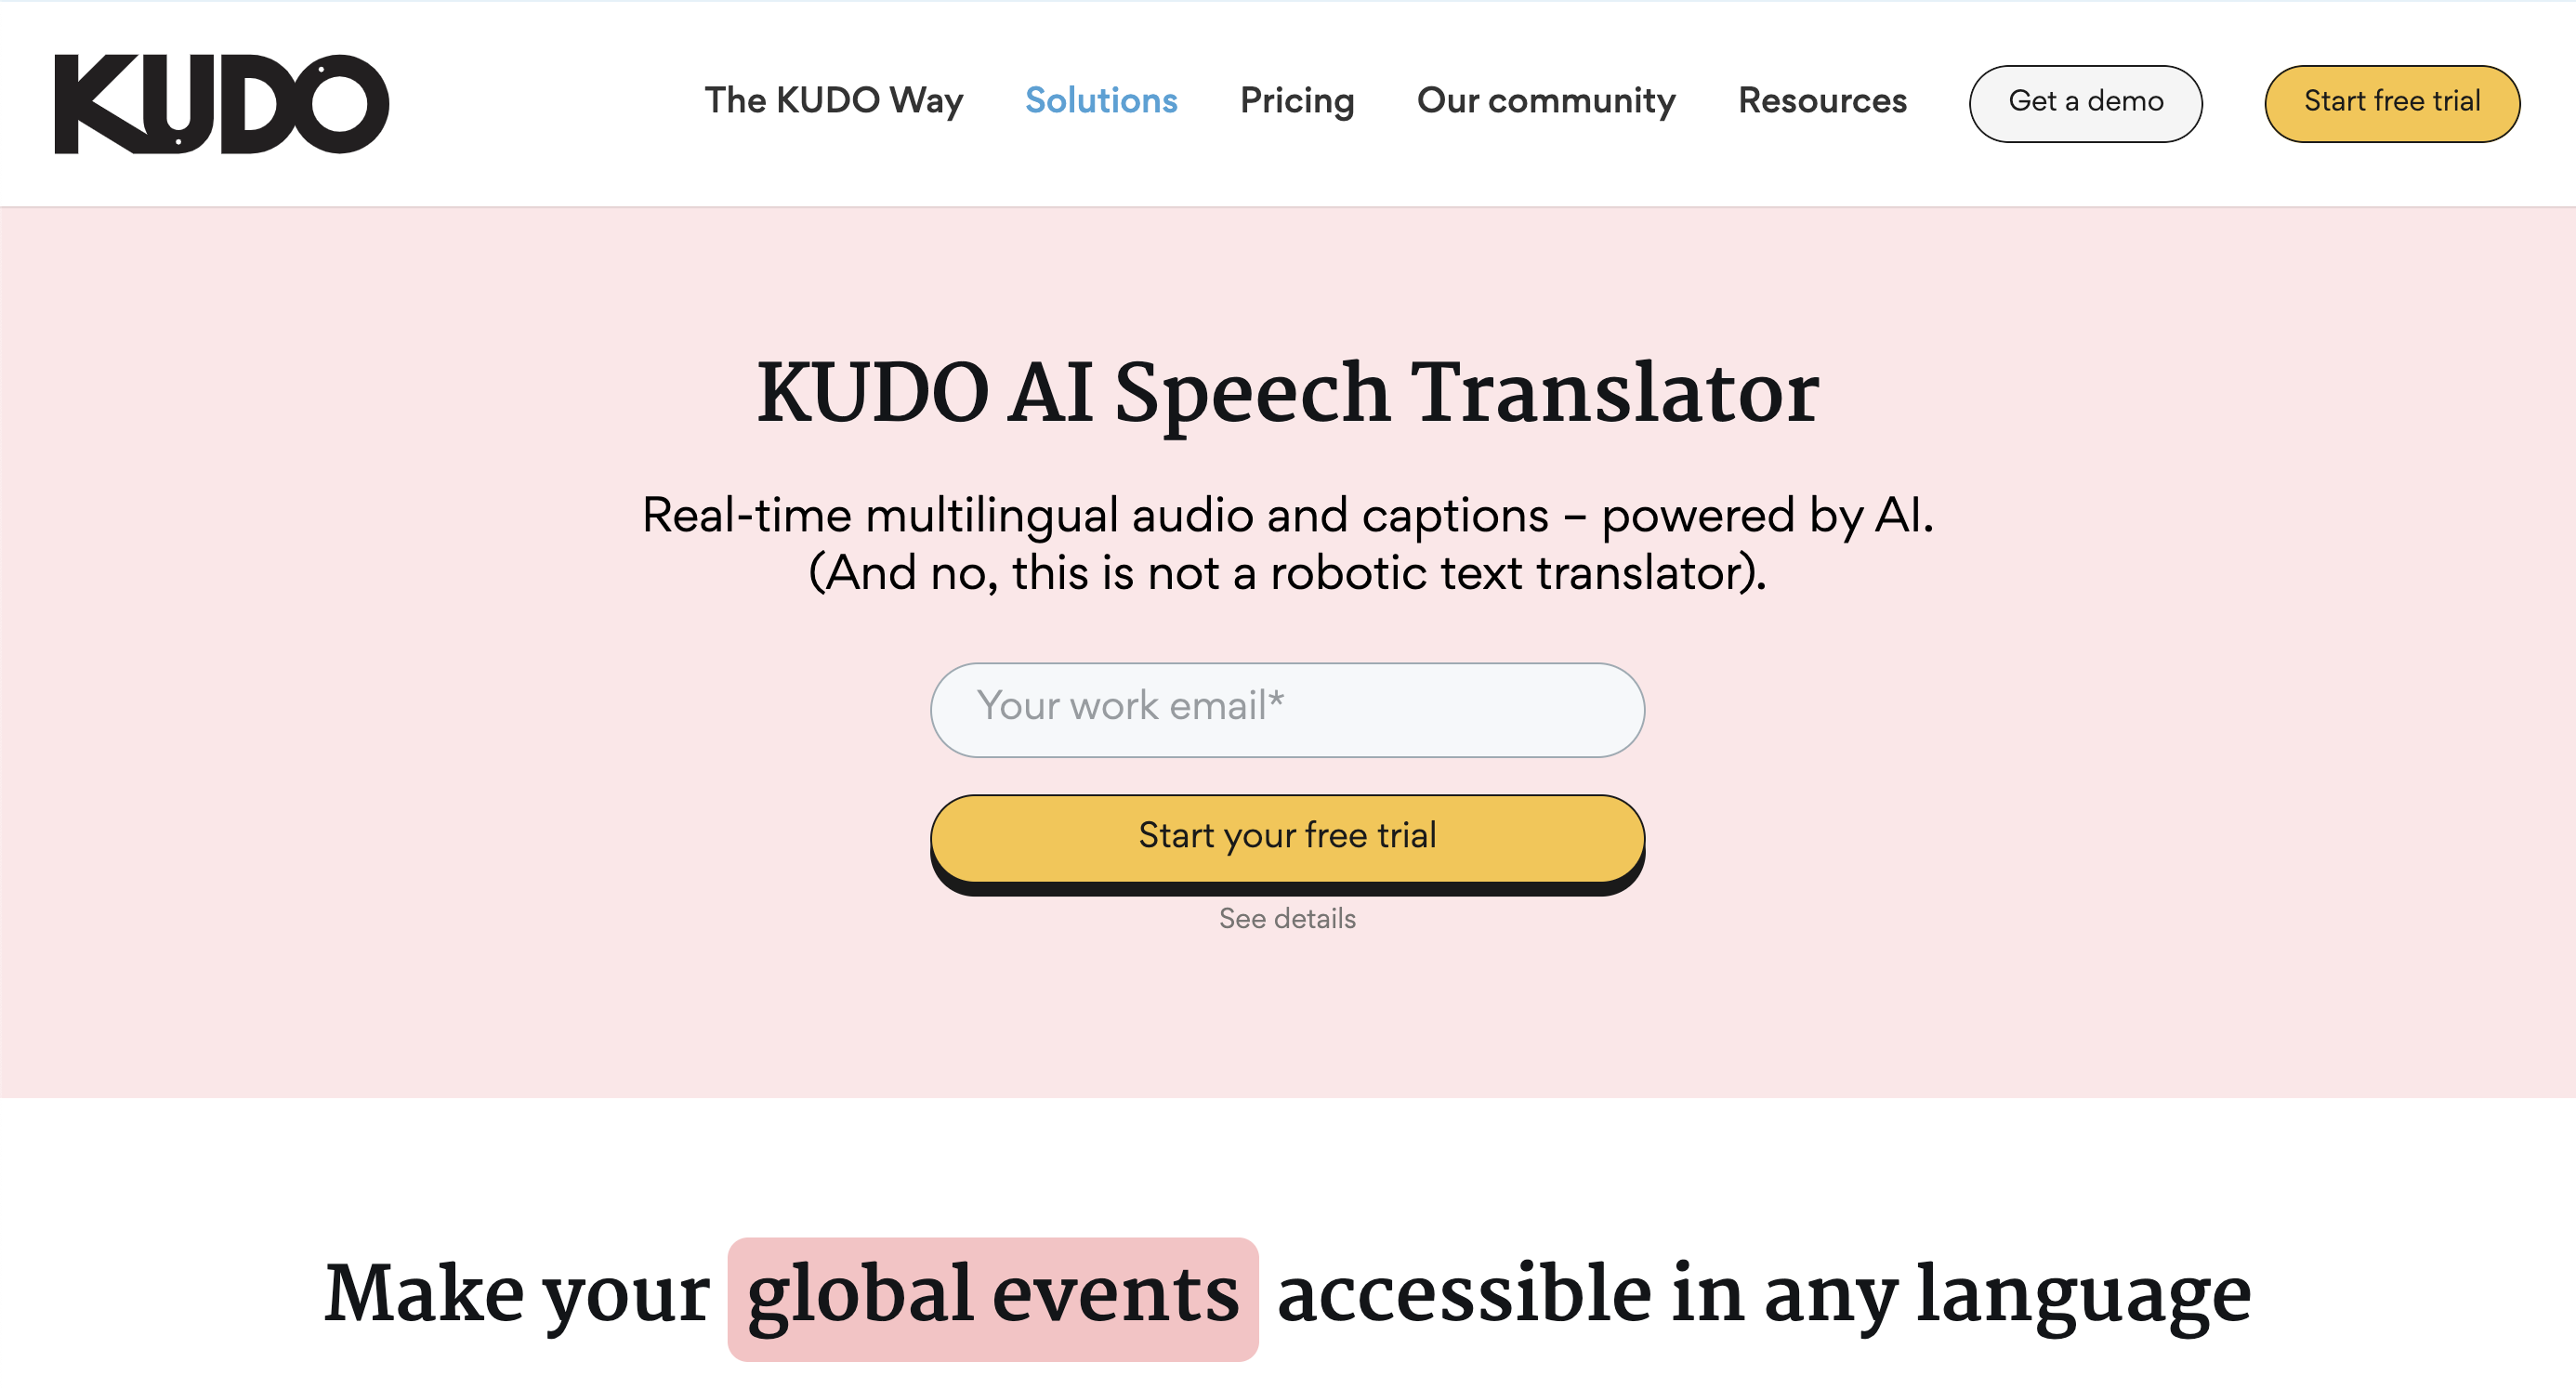 Start your free KUDO AI trial